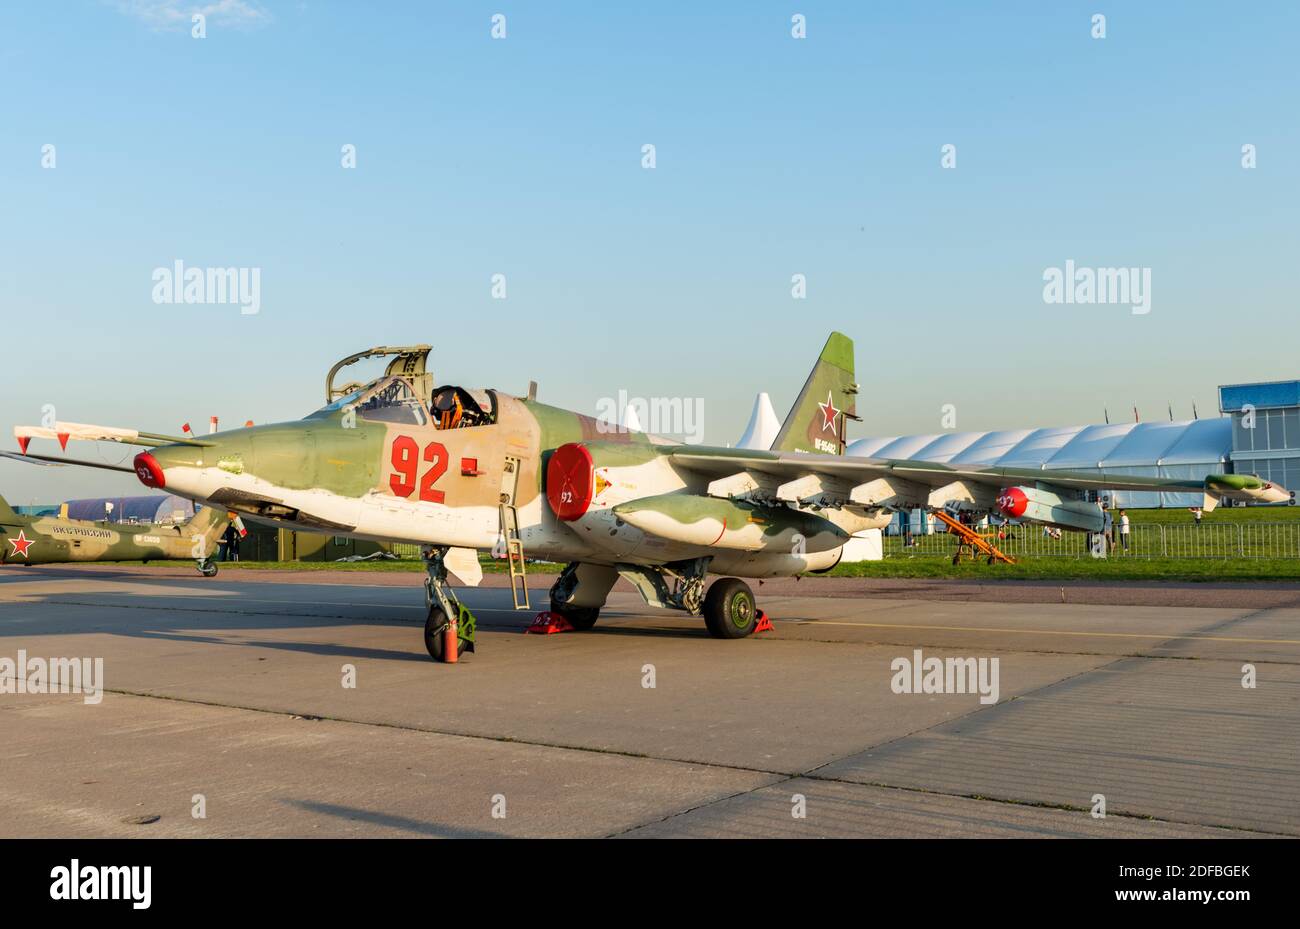 30 août 2019, région de Moscou, Russie. Sukhoi su-25 russe attaque un avion au salon international de l'aviation et de l'espace. Banque D'Images